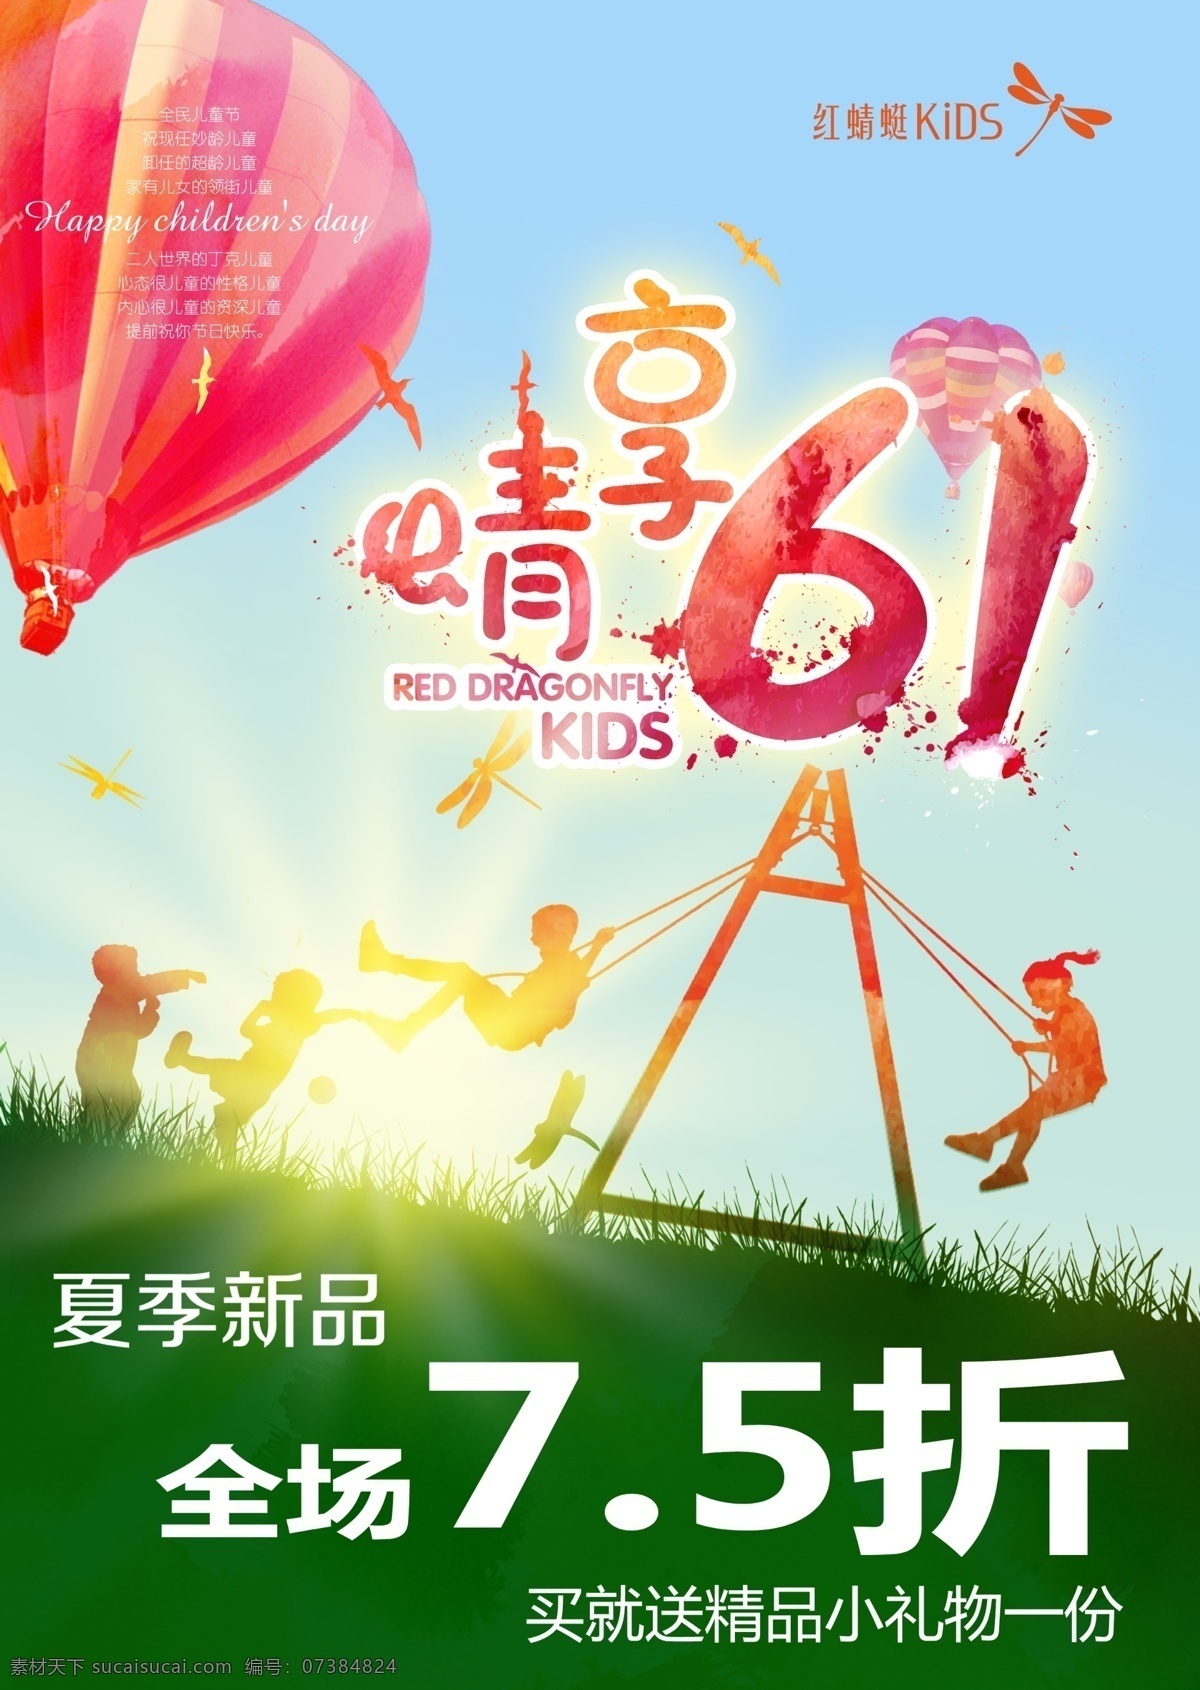 红 蜻蜓 享 晴 六 分层素材 儿童节海报 儿童节广告 儿童节活动 儿童节宣传 热气球 广告 海报